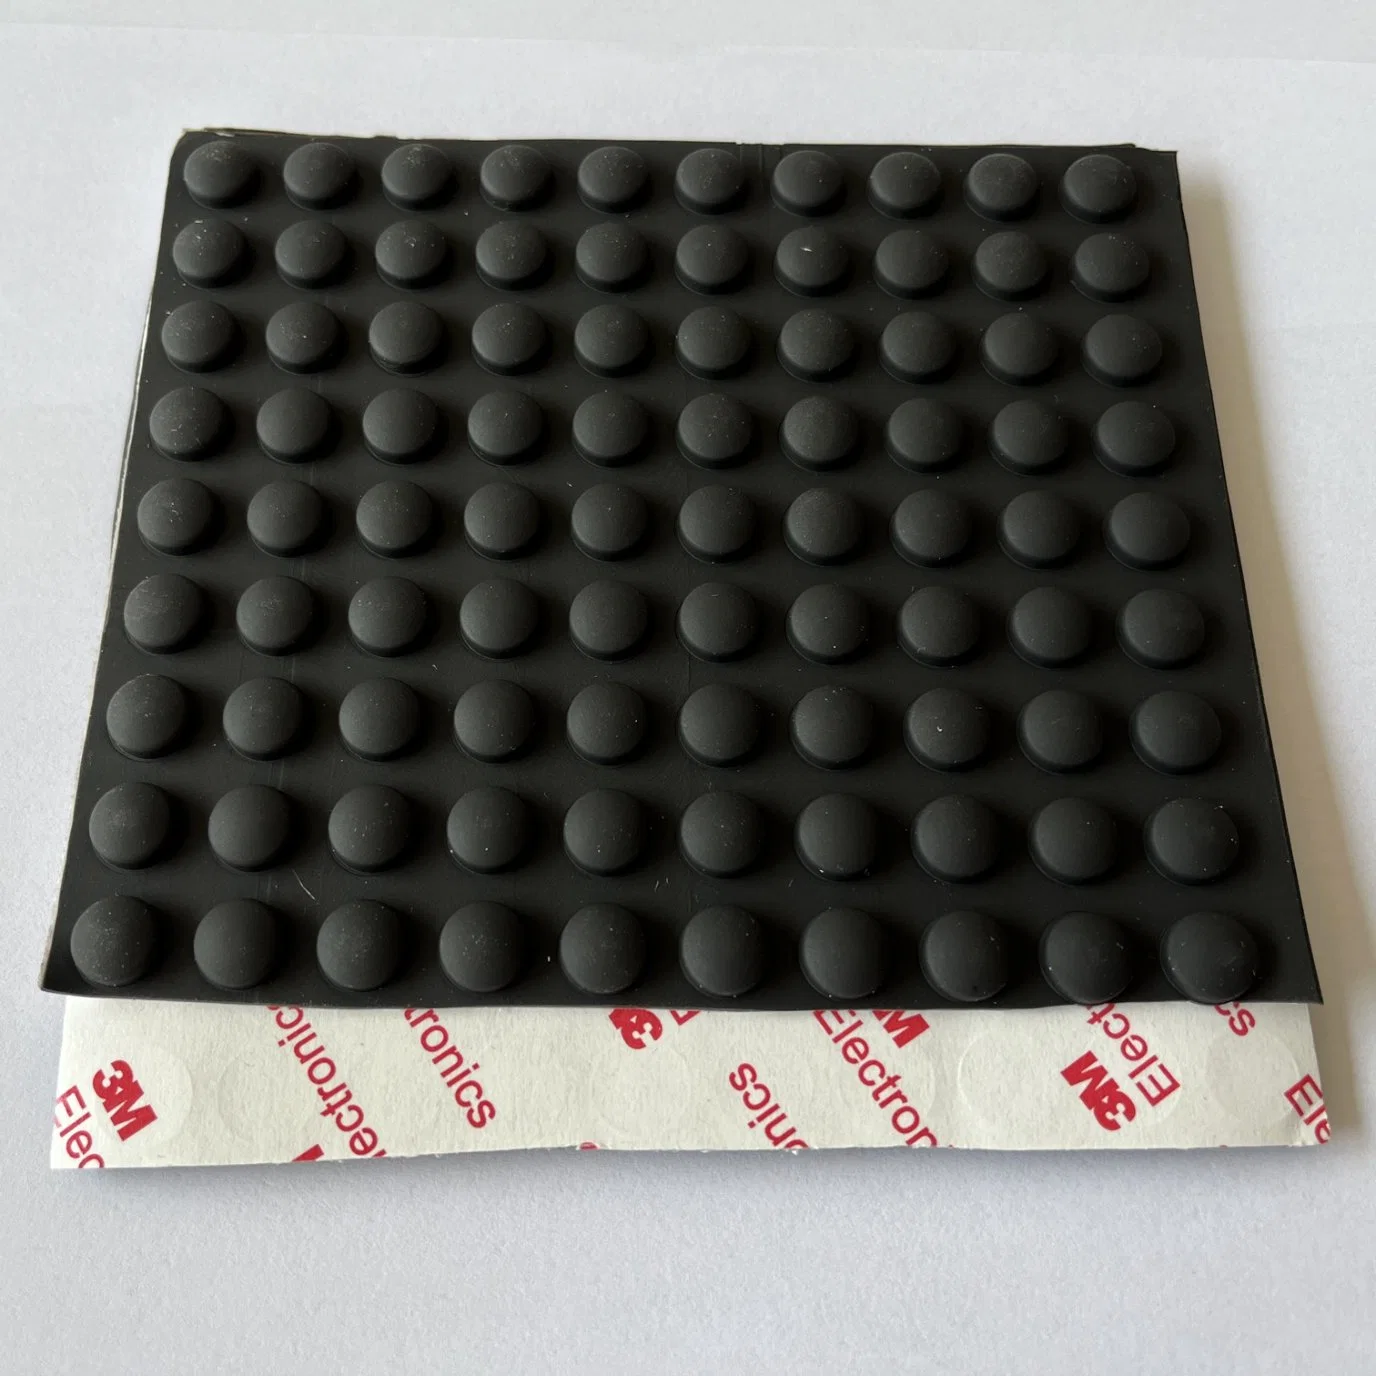 Black Surface Protectors Self Adhesive Sillicon Rubber Bumper